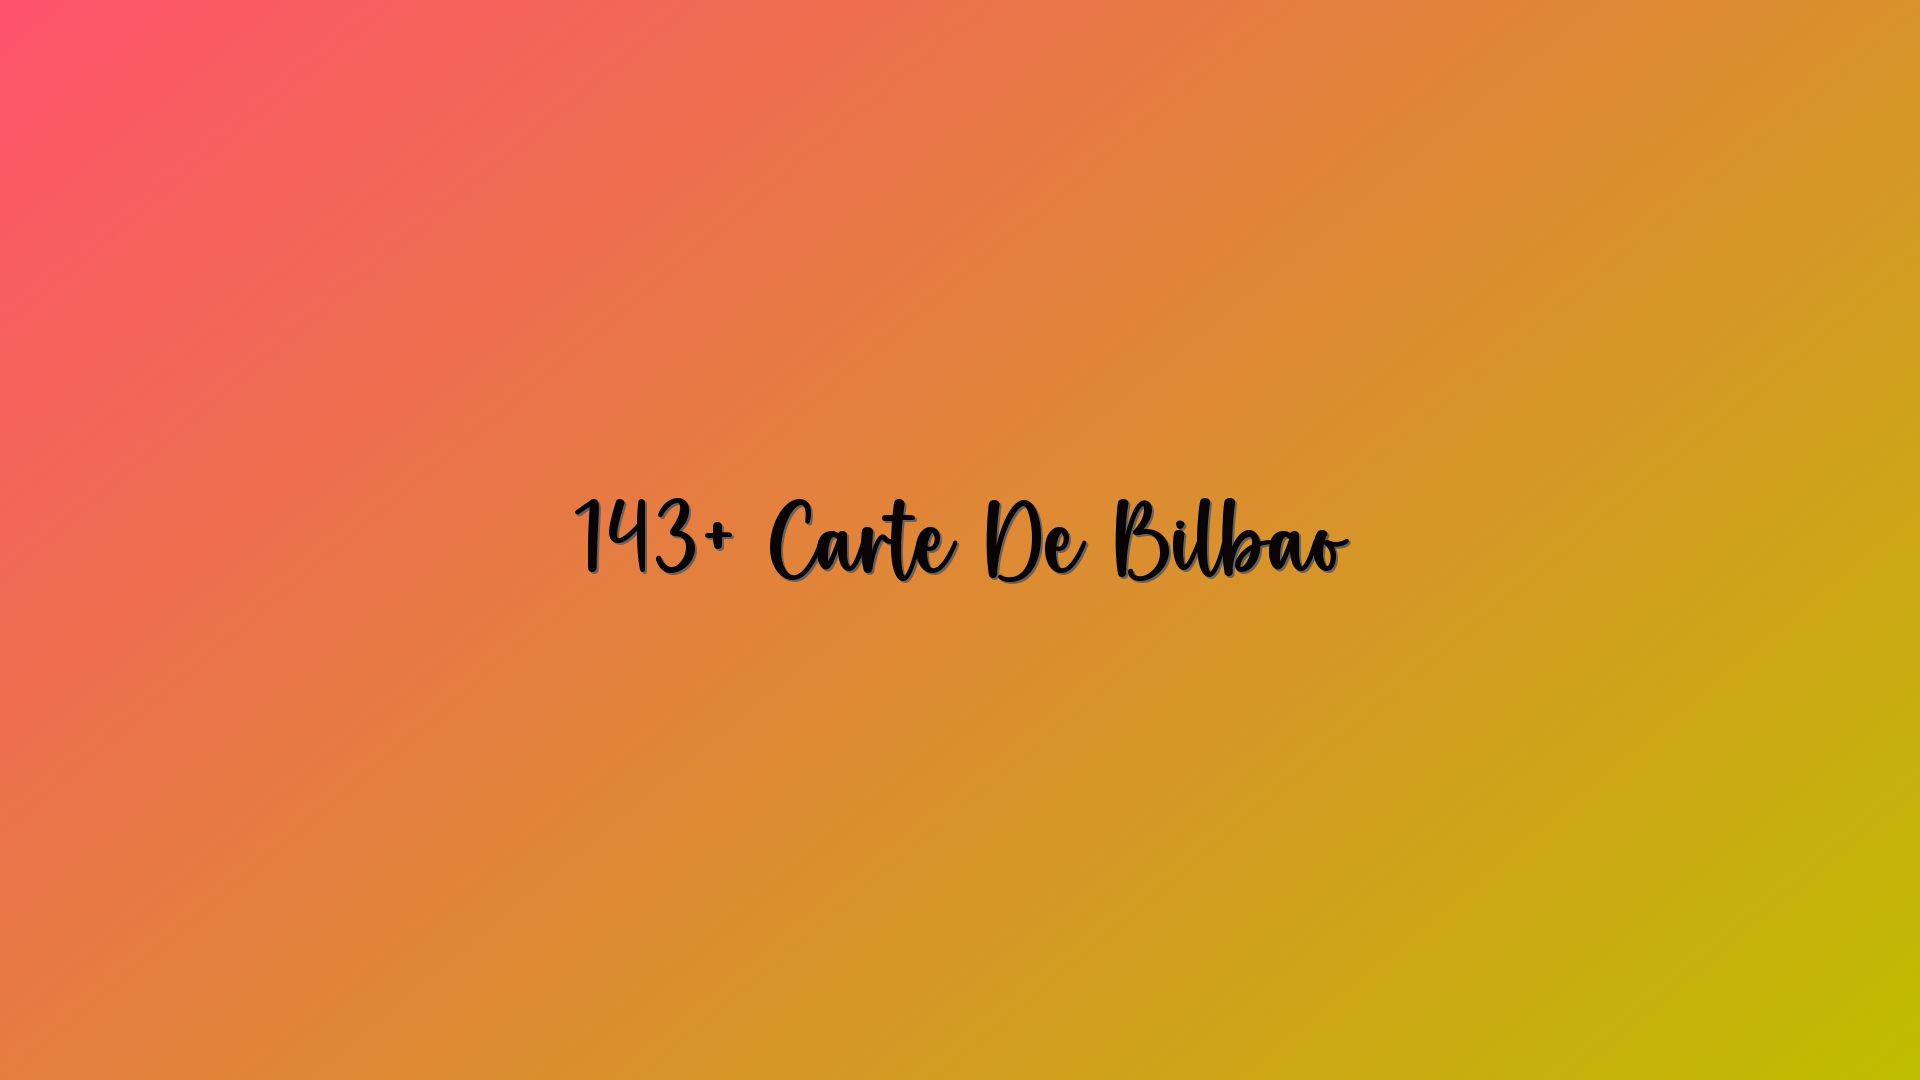 143+ Carte De Bilbao